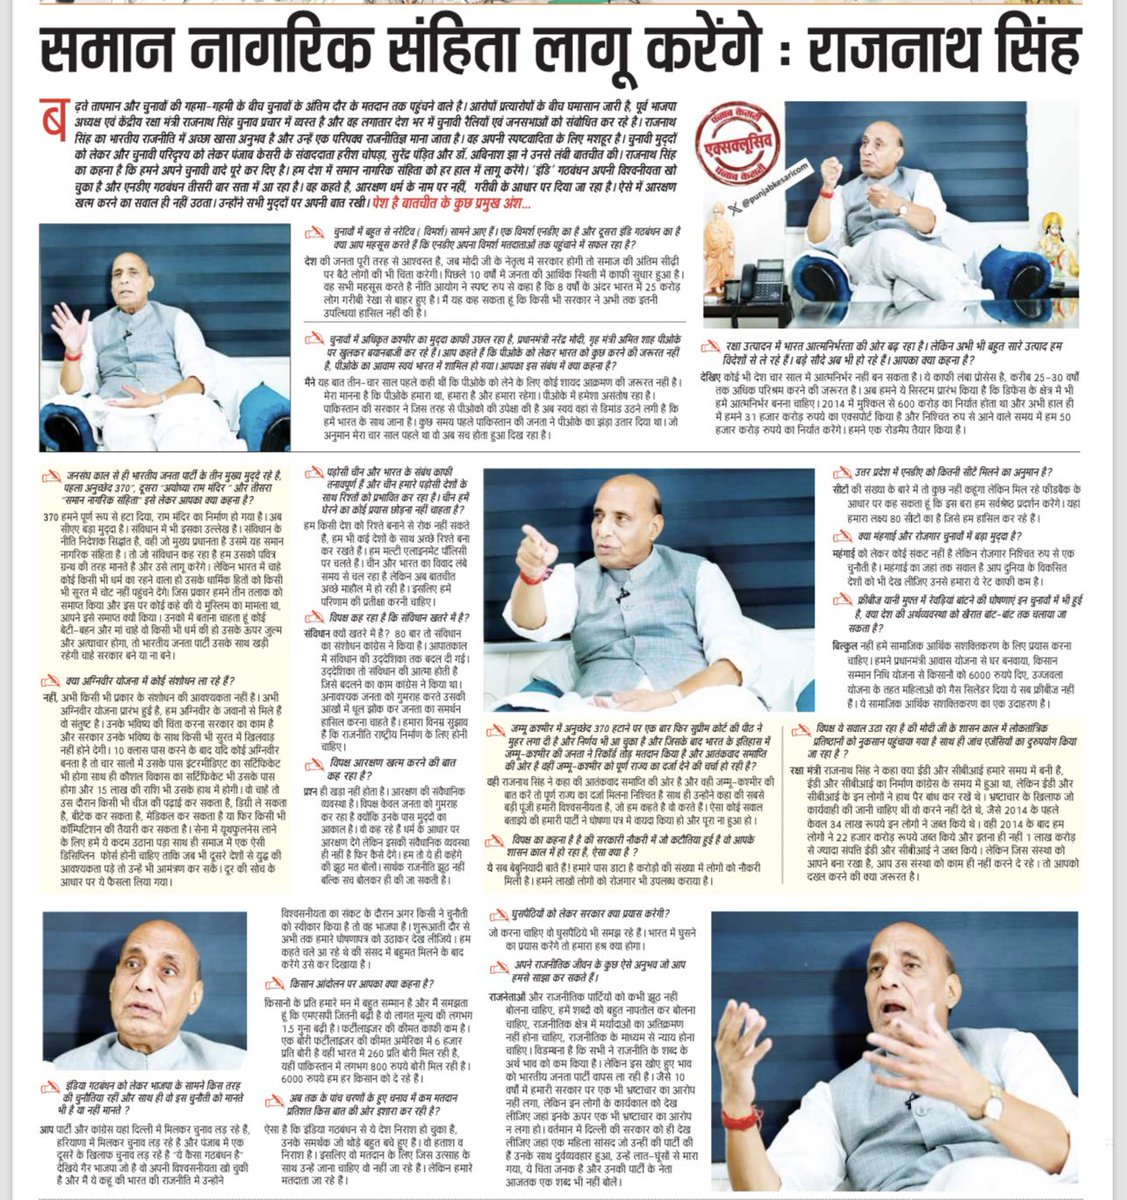 हिन्दी दैनिक समाचार पत्र @punjabkesari से हुई बातचीत में तमाम मुद्दों पर चर्चा हुई। आप भी पढ़िए।